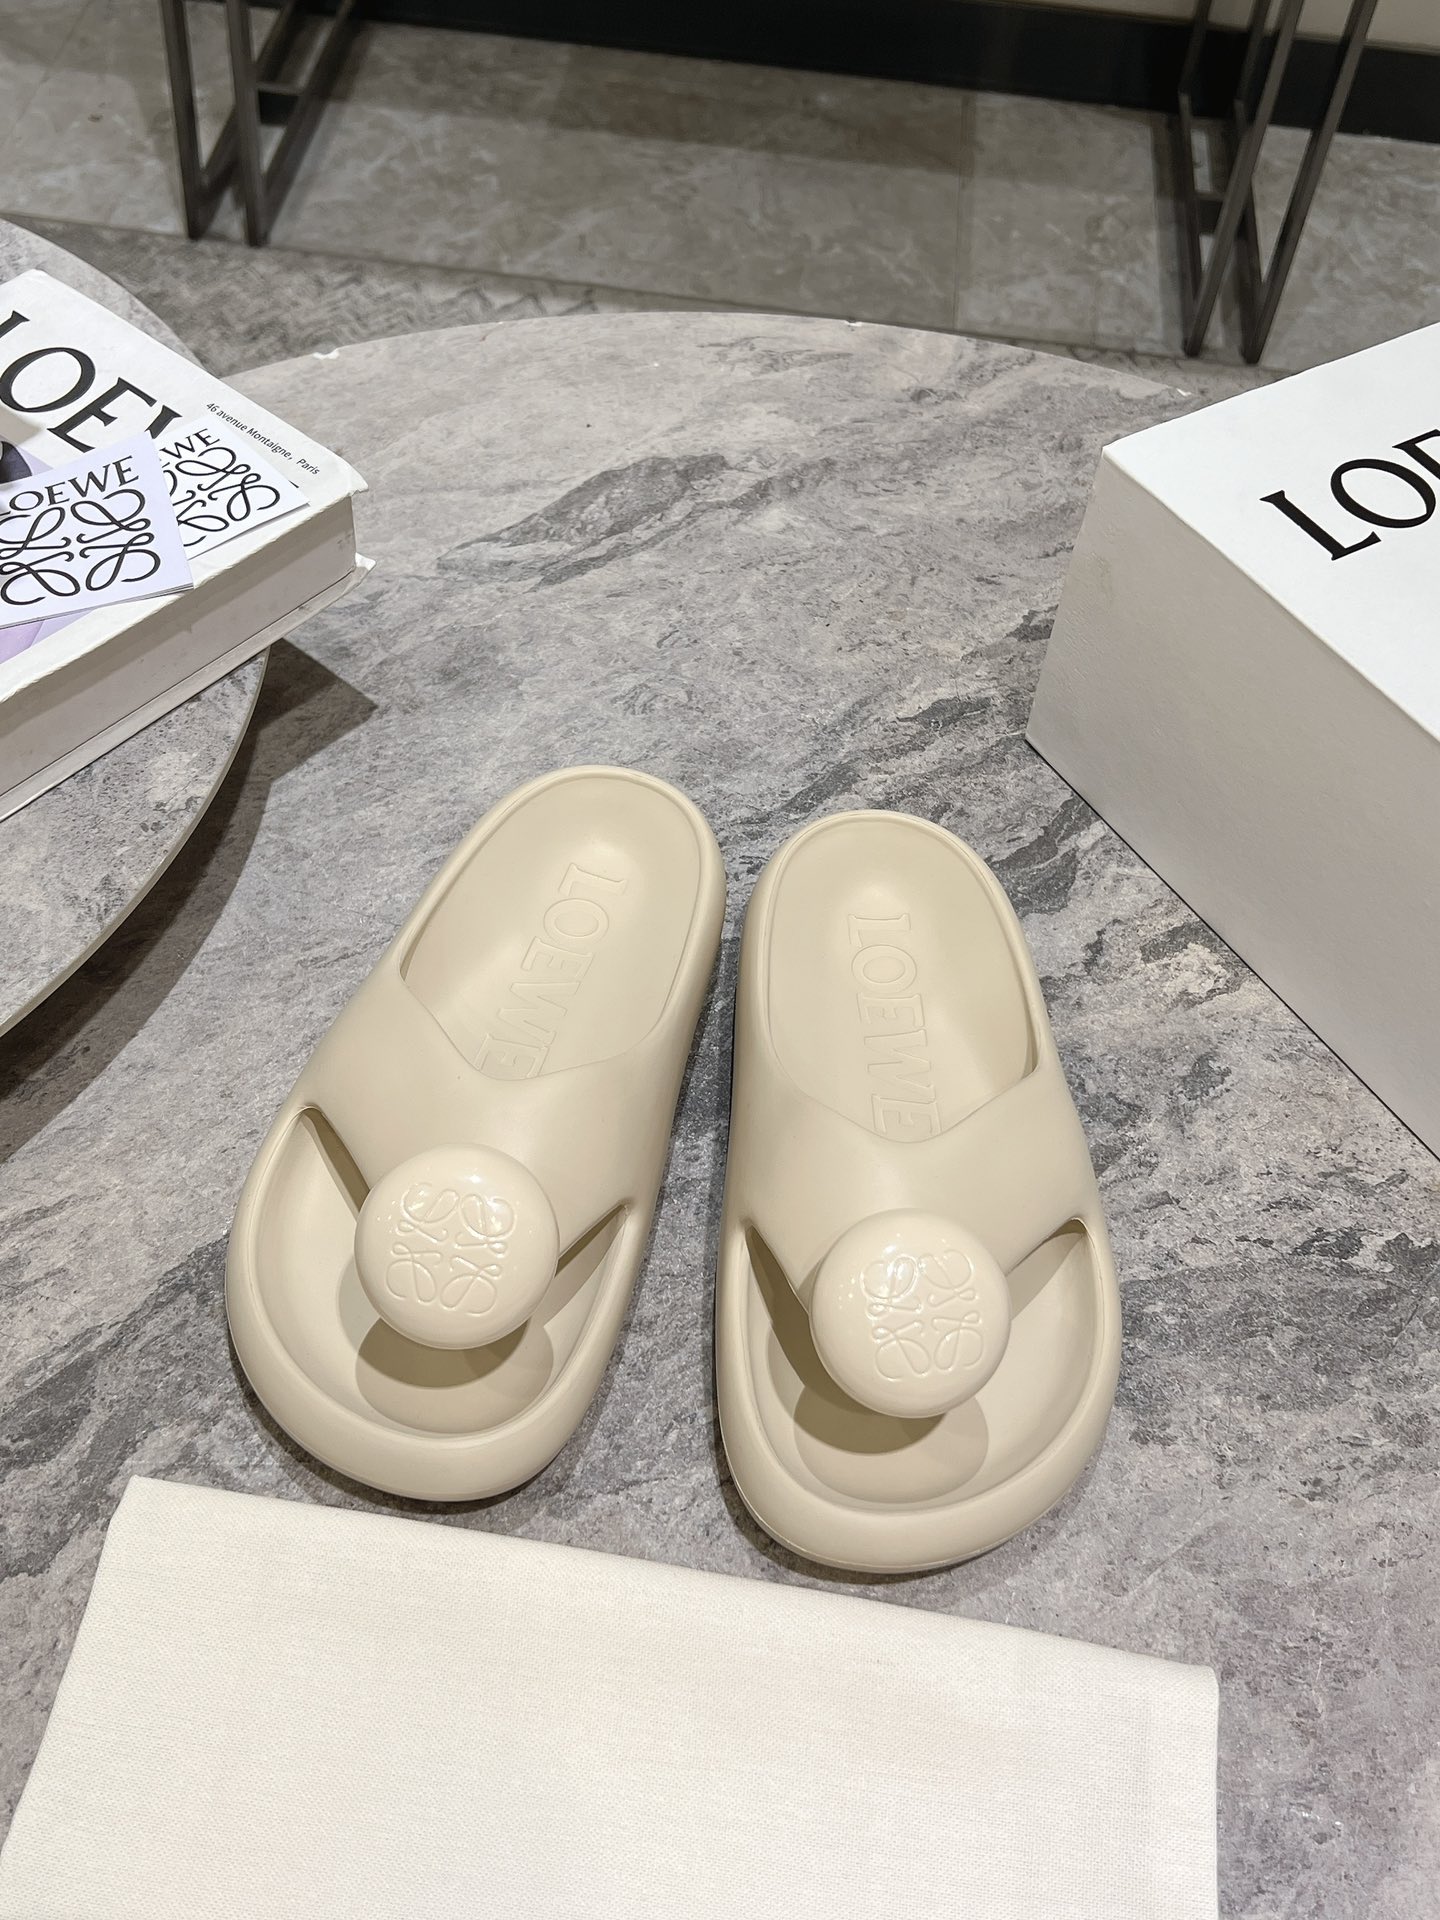 Loewe Scarpe Sandali Pantofole PU Gomma Pelle di pecora Collezione Primavera/Estate Spiaggia